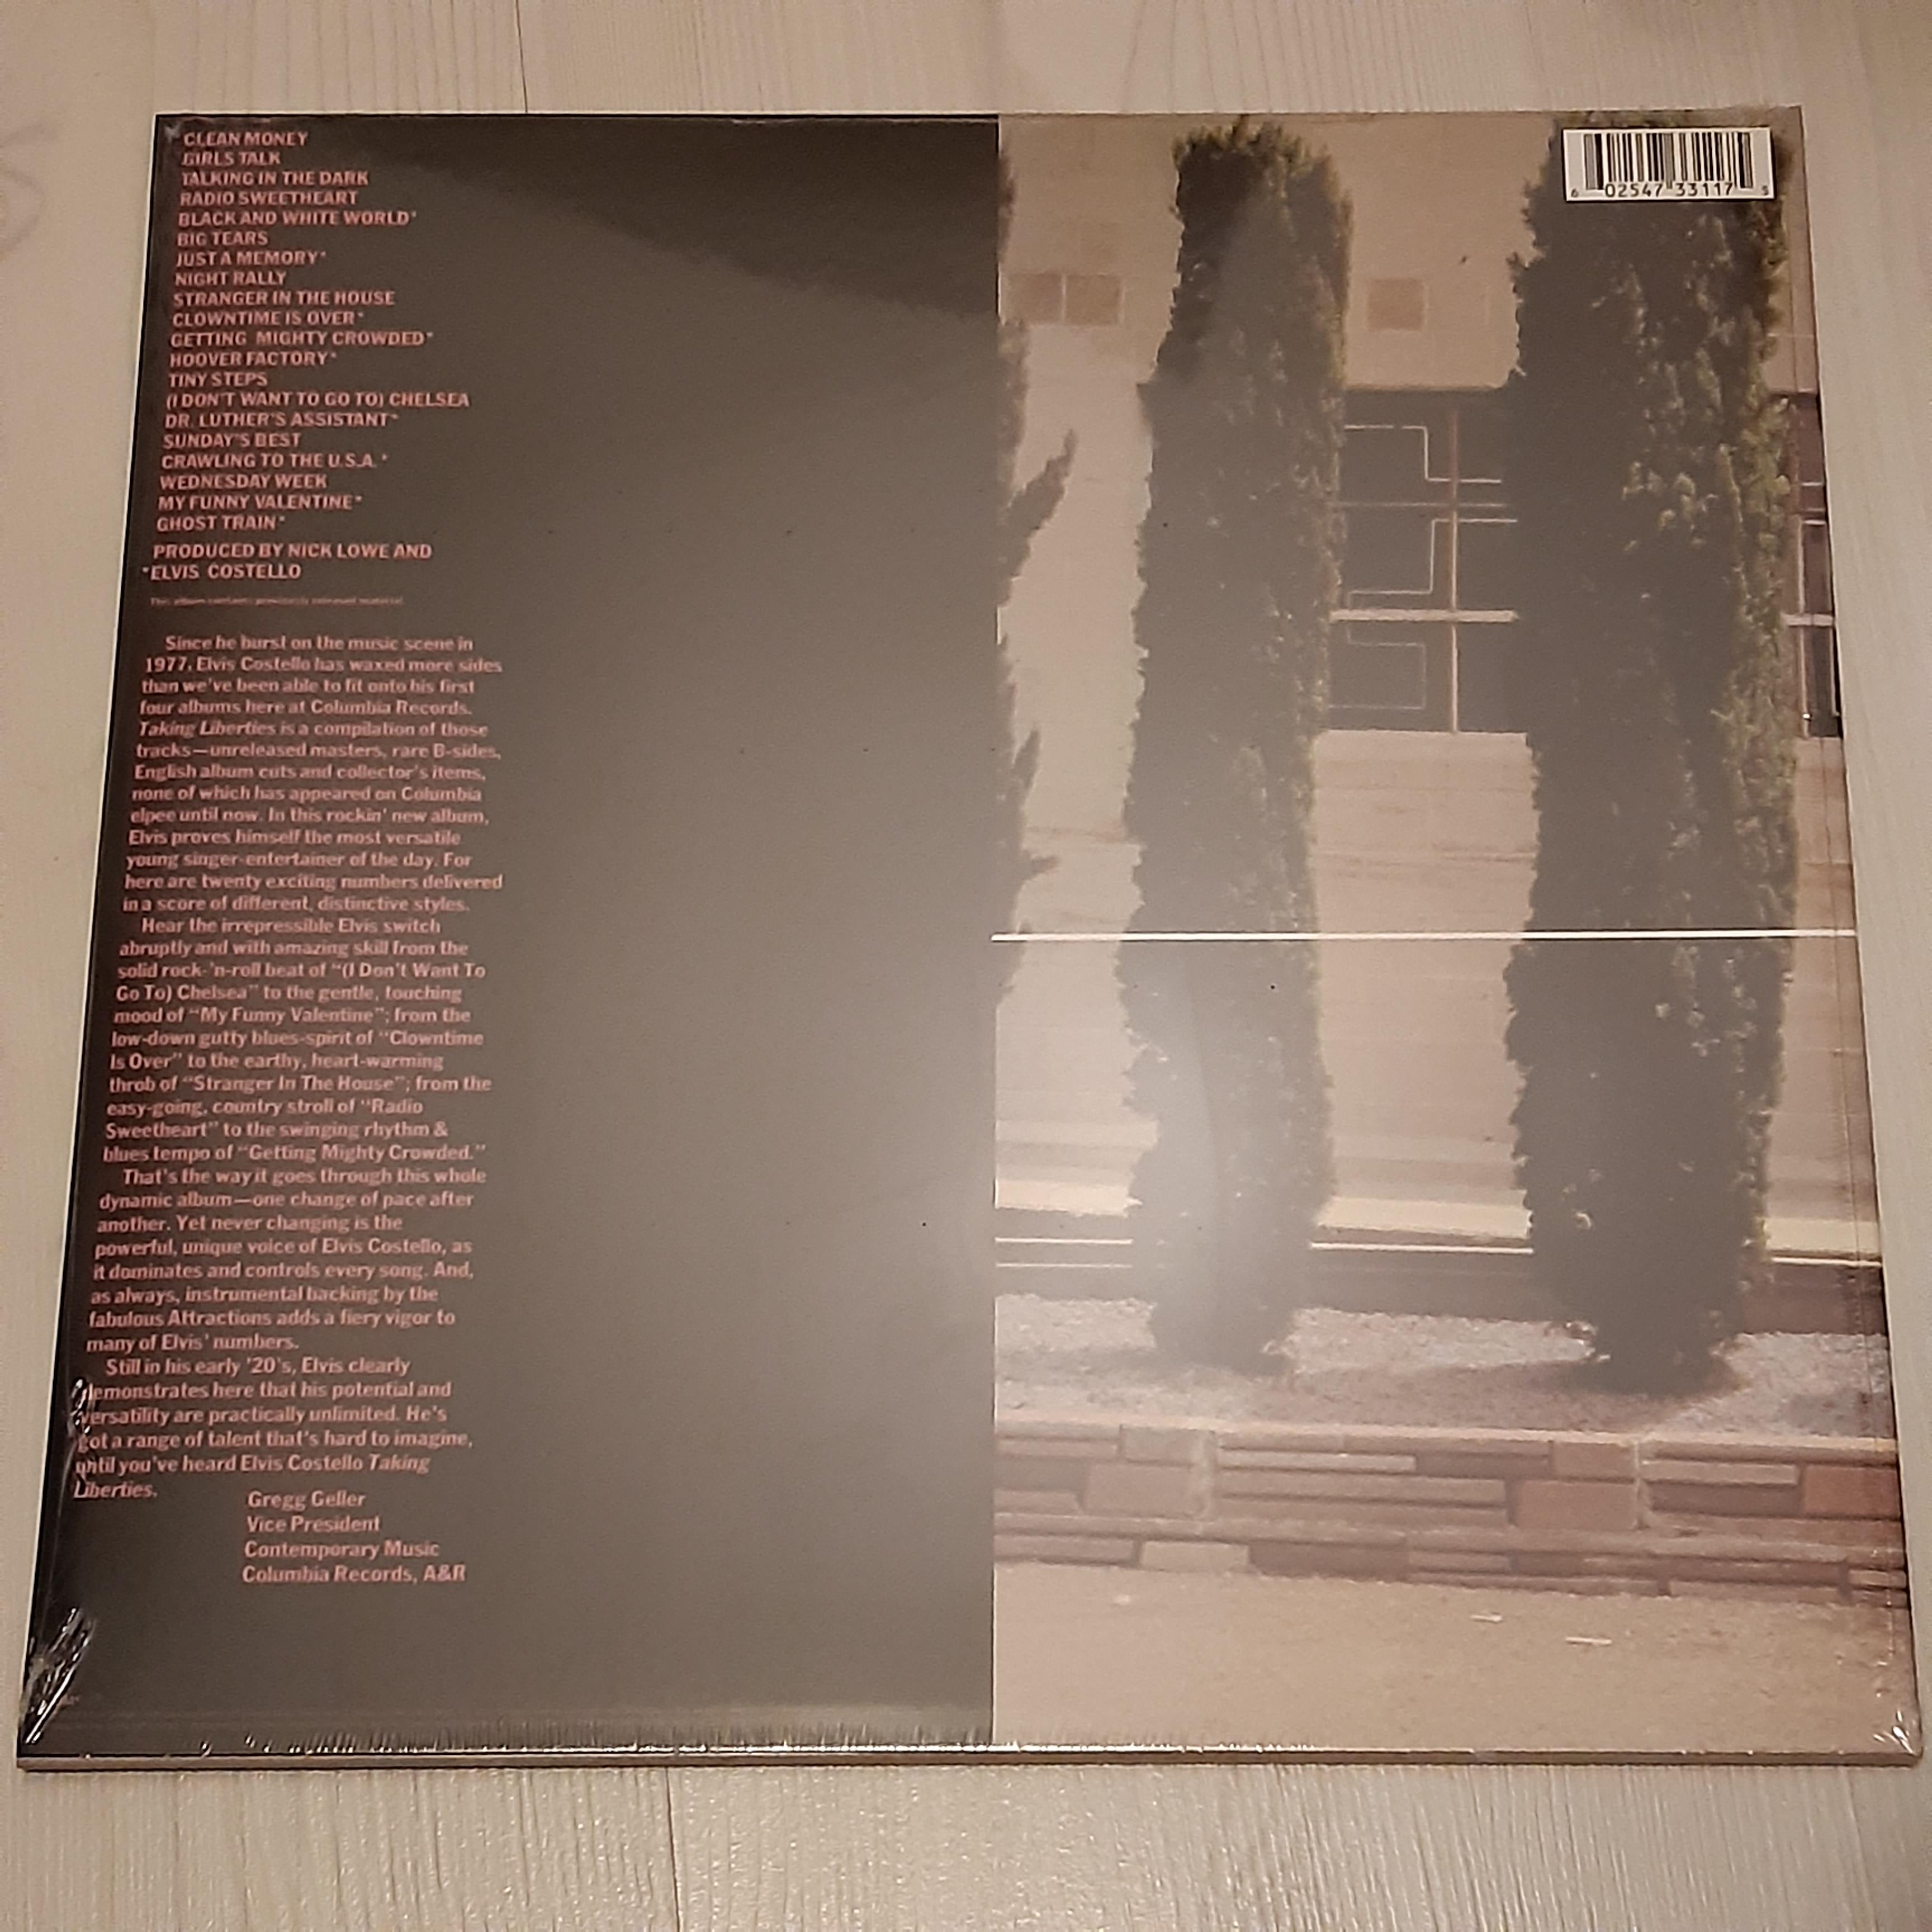 Elvis Costello - Taking Liberties - LP (uusi)